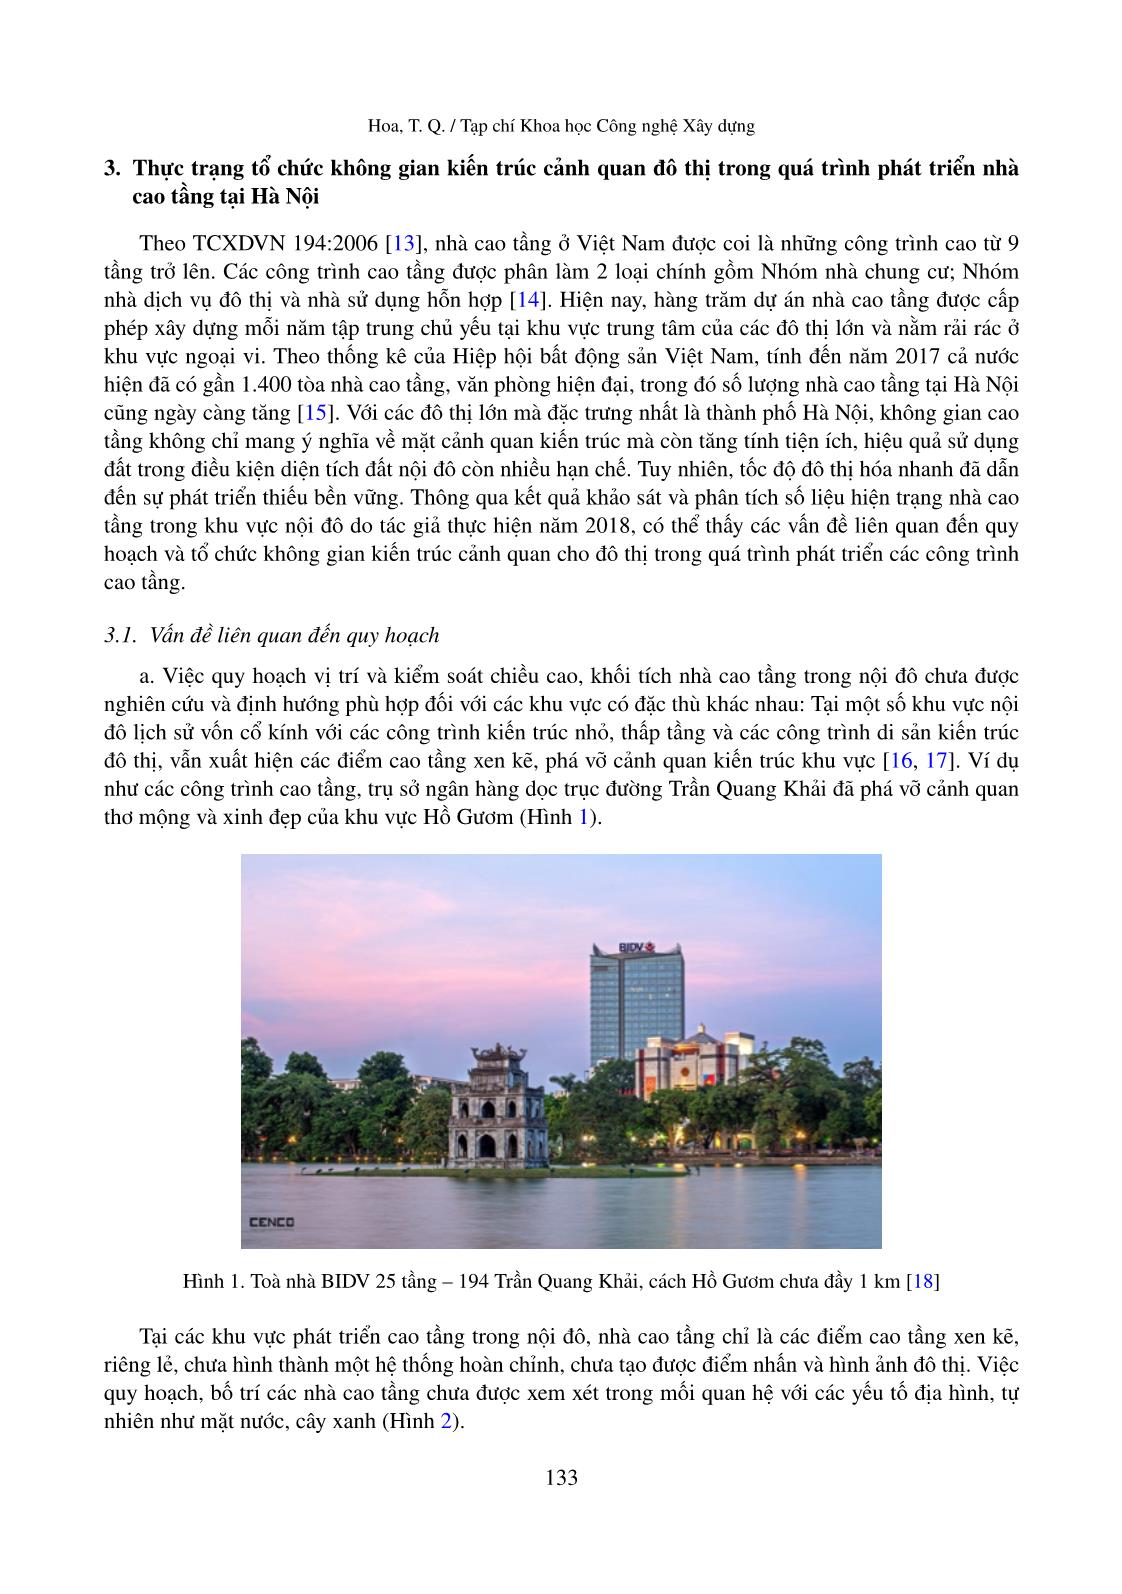 Tổ chức không gian kiến trúc cảnh quan trong quá trình phát triển nhà cao tầng tại khu vực nội đô của thành phố Hà Nội – hướng tới đô thị bền vững trang 5